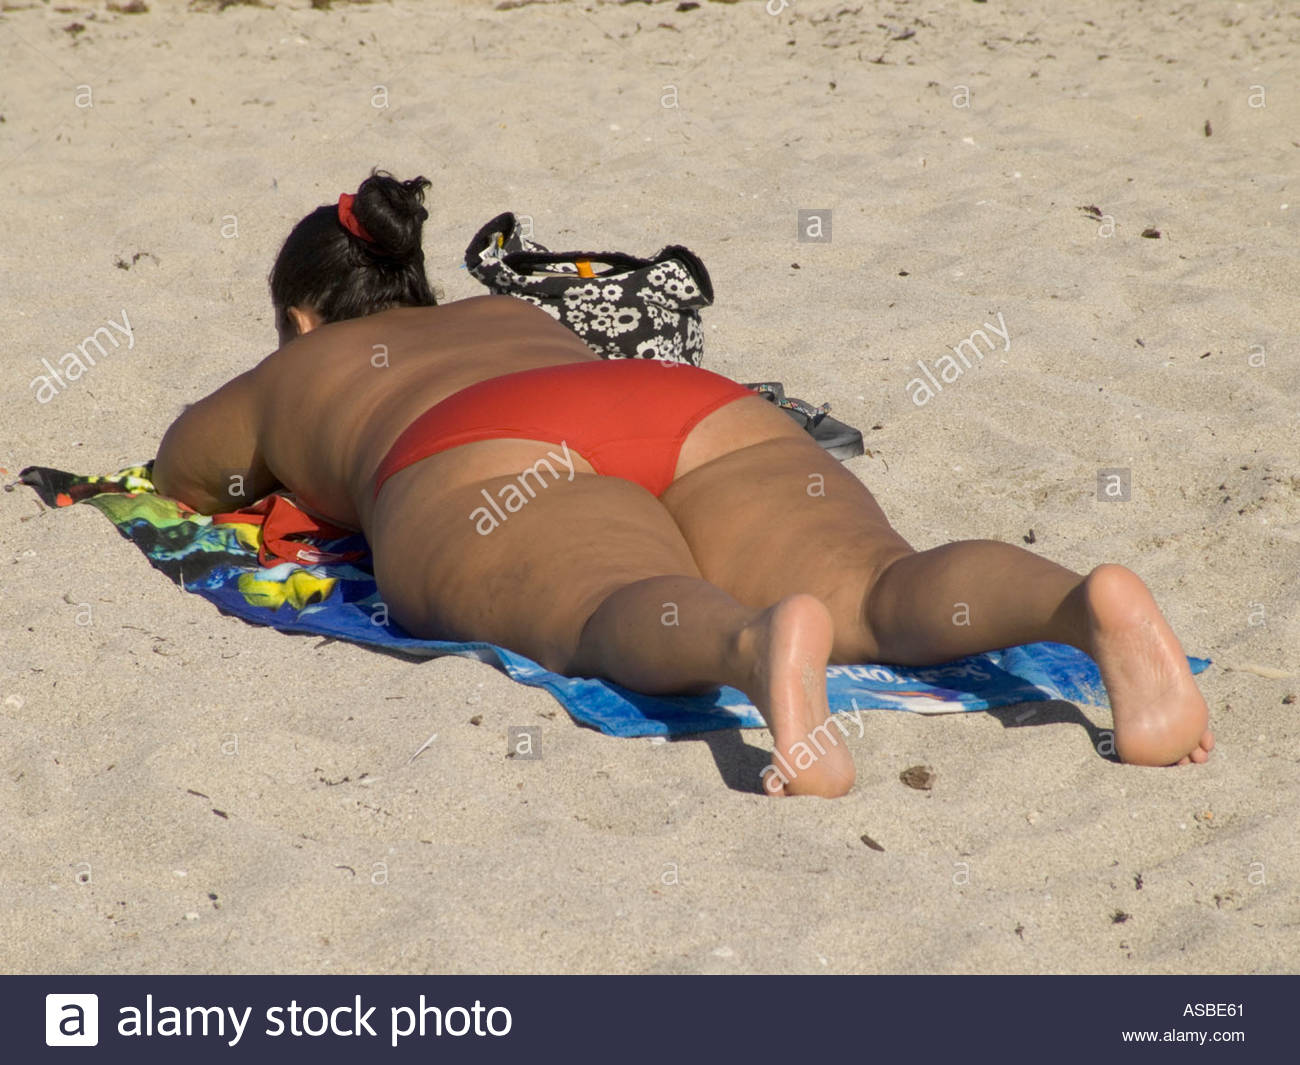 Fat Sunbather 42